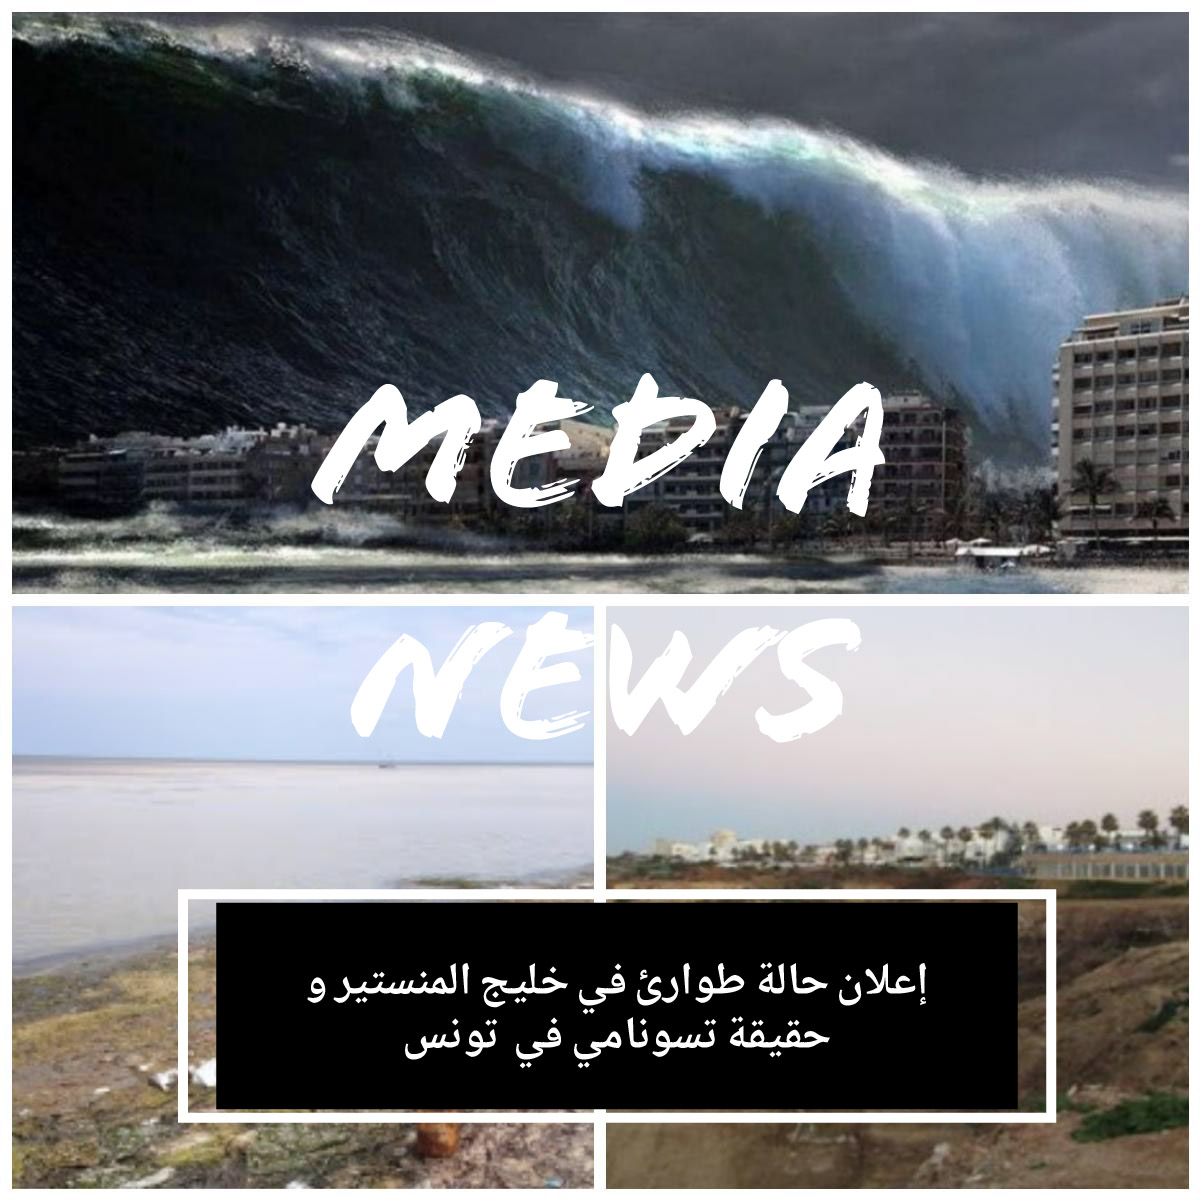 إعلان حالة طوارئ في خليج المنستير و حقيقة تسونامي في تونس